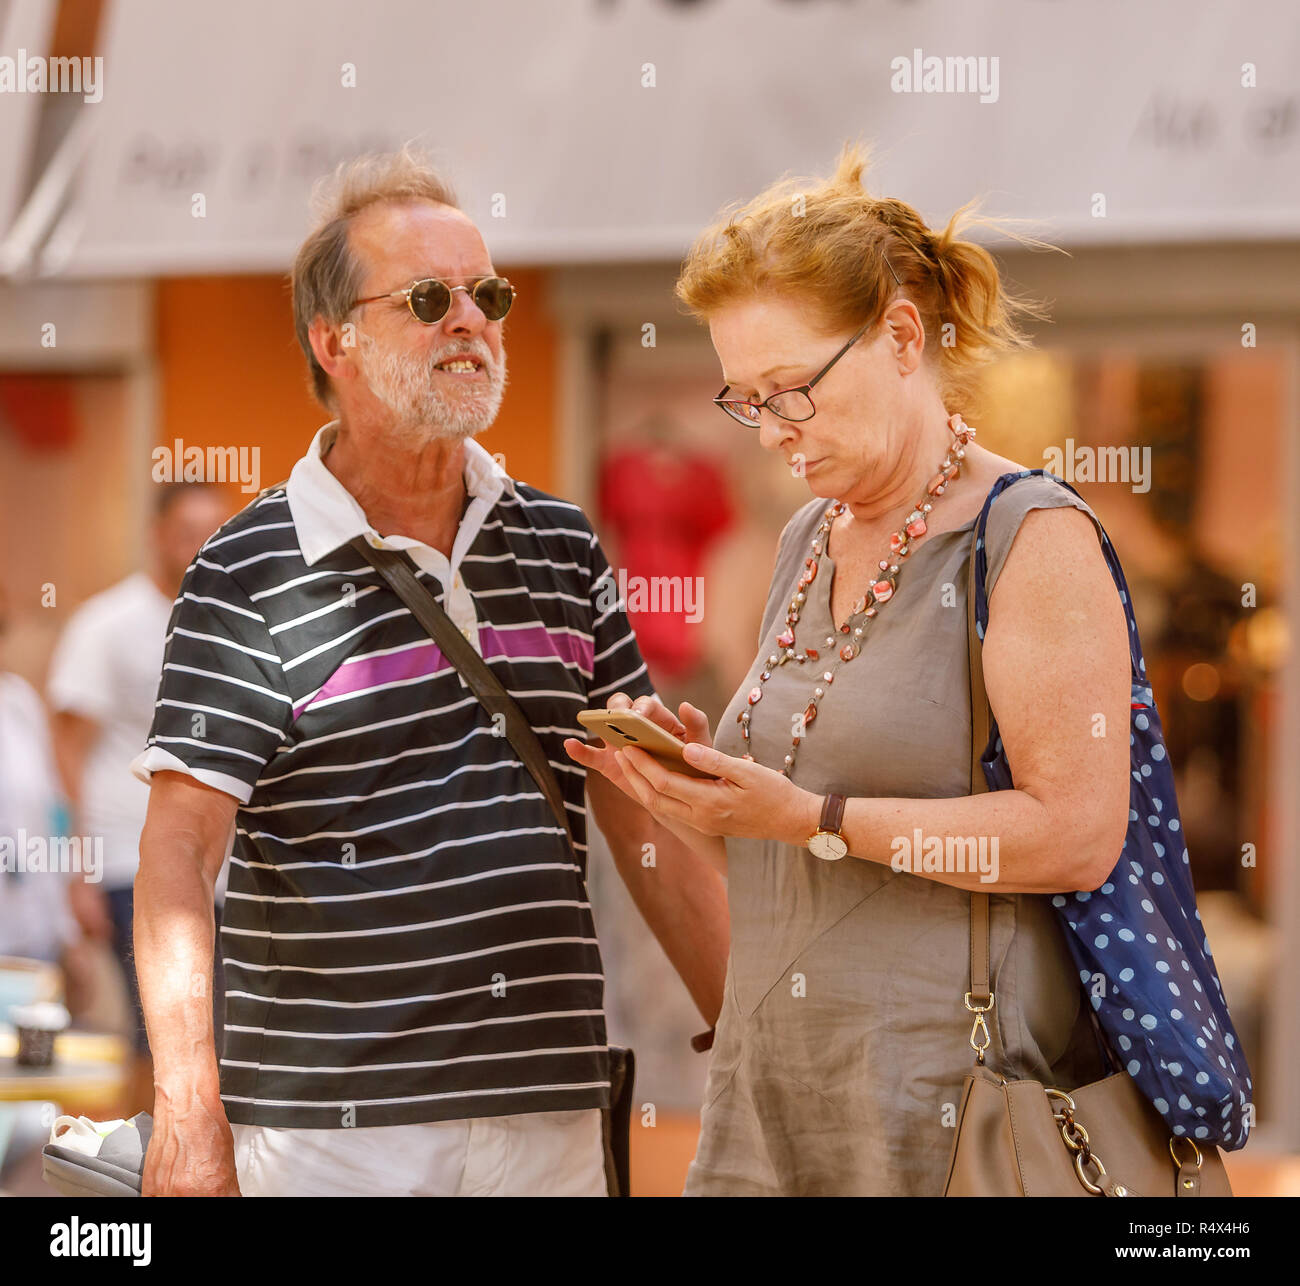 Tourist couple recherchant leur chemin sur téléphone mobile Banque D'Images